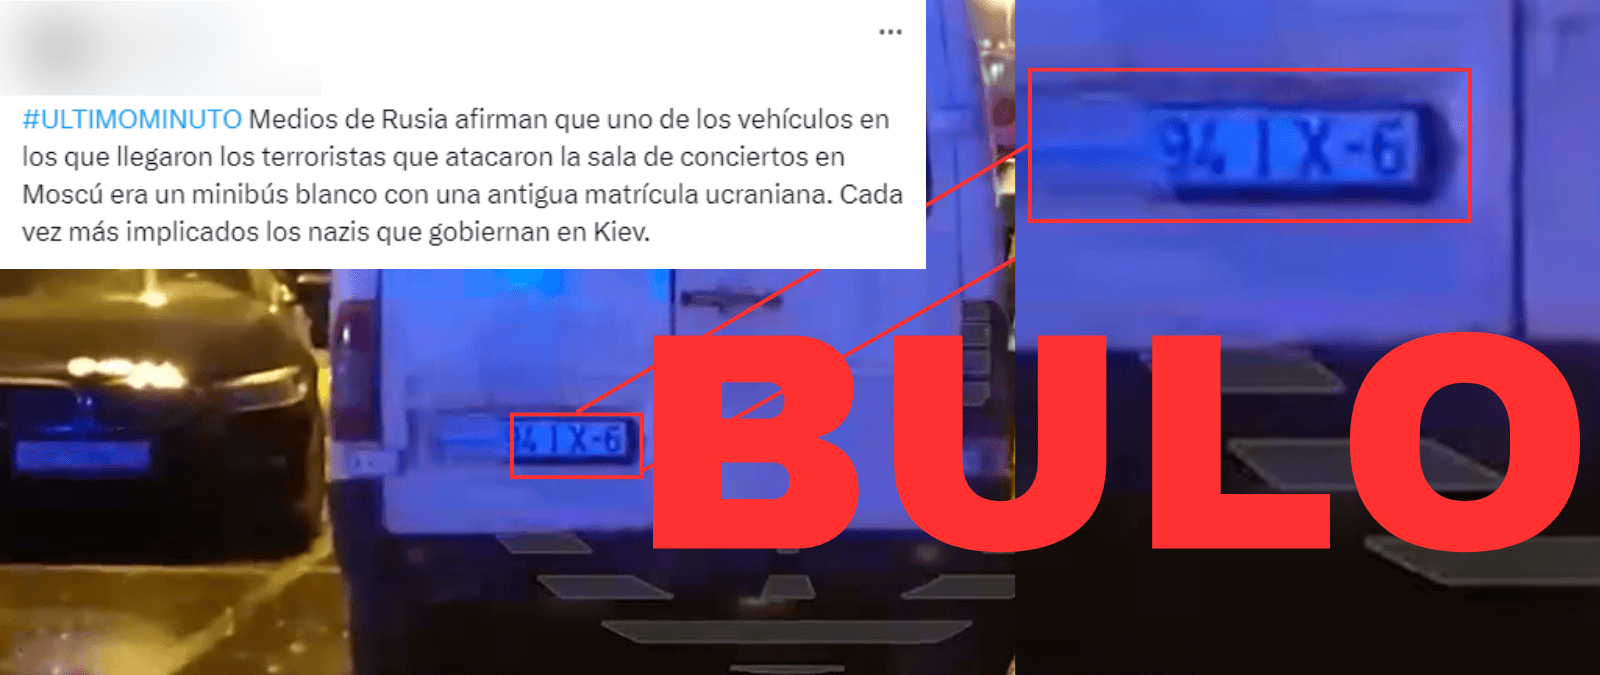 No, esta furgoneta próxima a los atentados de Moscú no tiene matrícula ucraniana: es bielorrusa